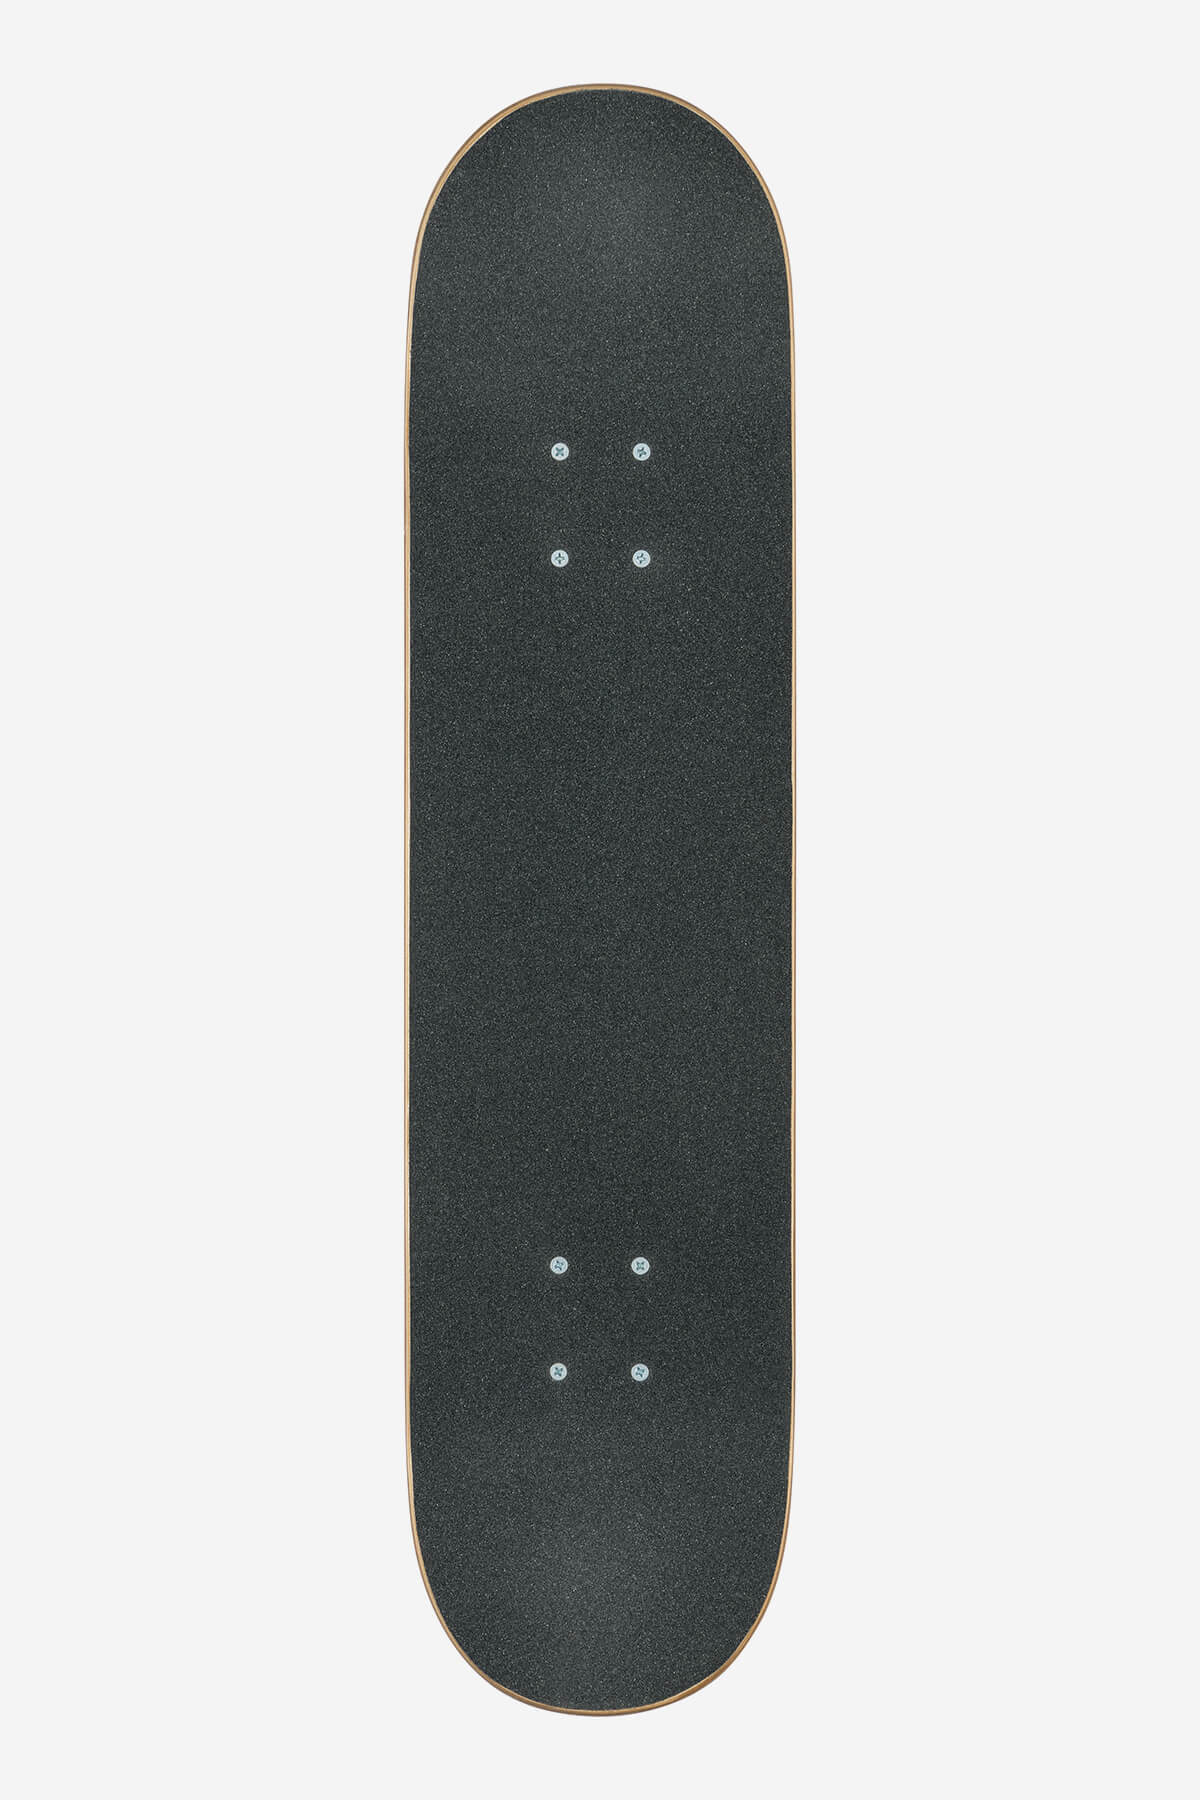 Globe Skateboard complet G0 Fubar complet 7.75" complet Skateboard en noir/Red